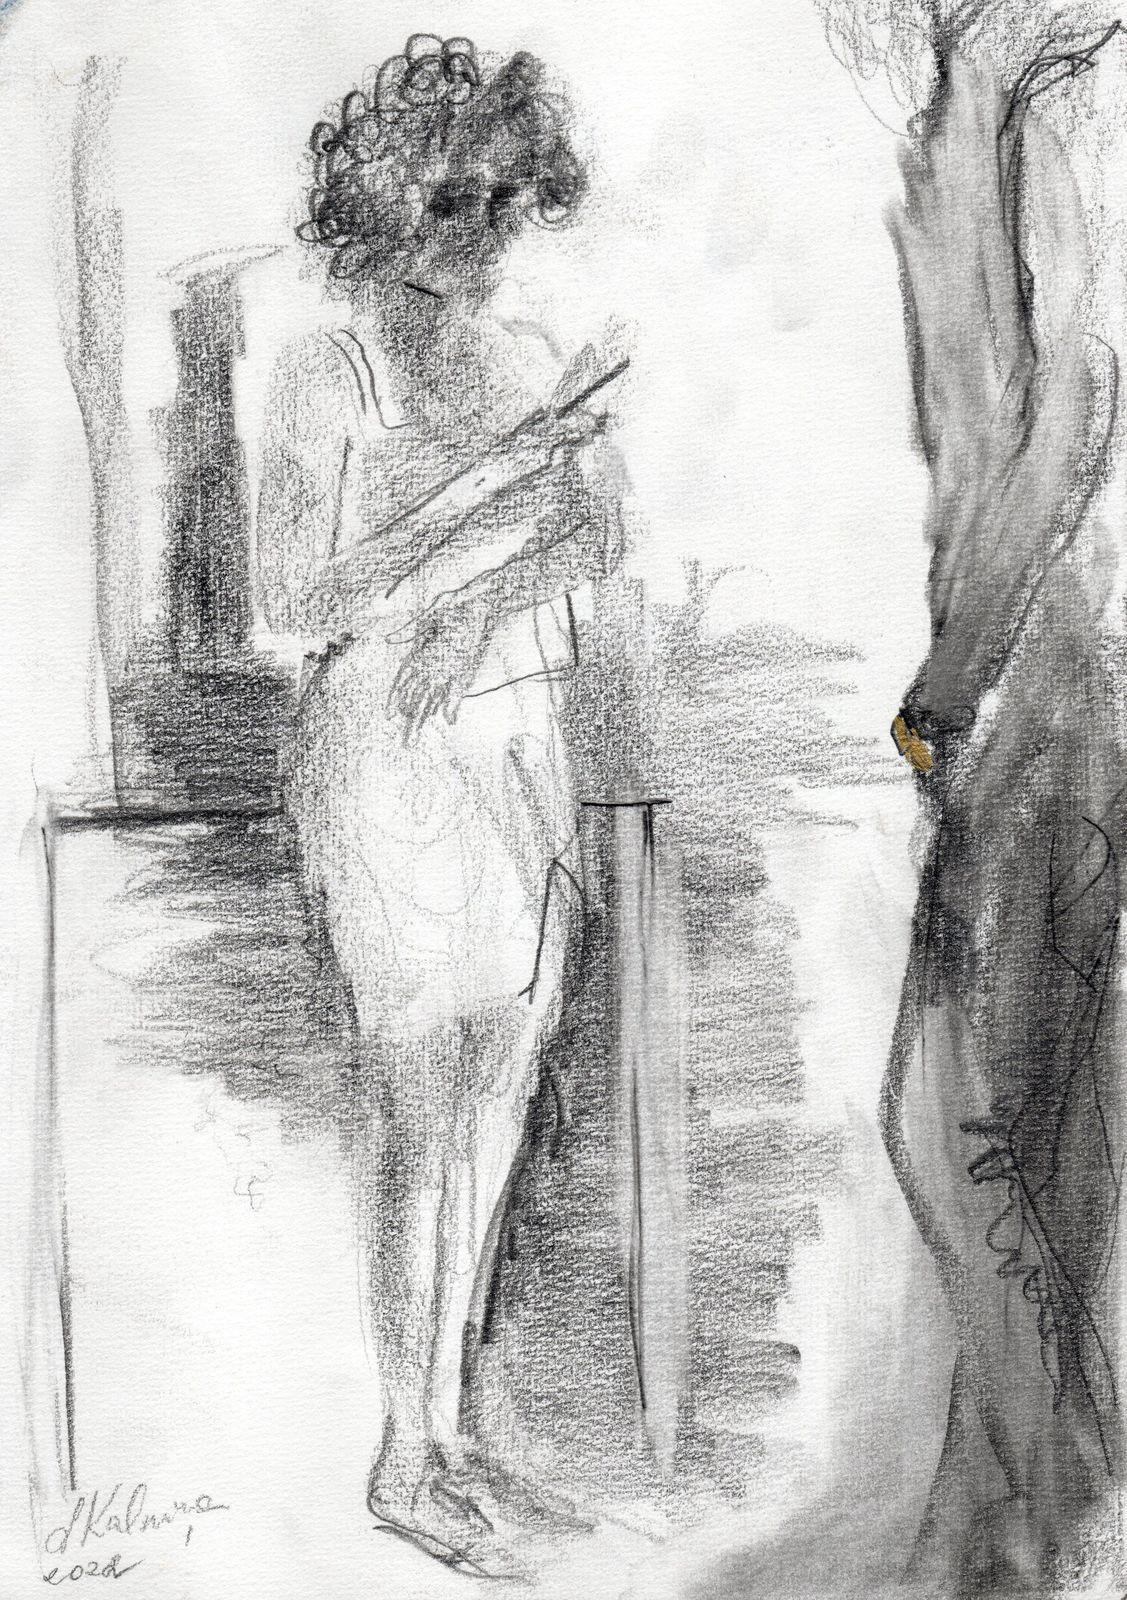 Liga Kalnina Figurative Art - Attractiveness  2022. Paper/pencil, 29.5x20.9 cm